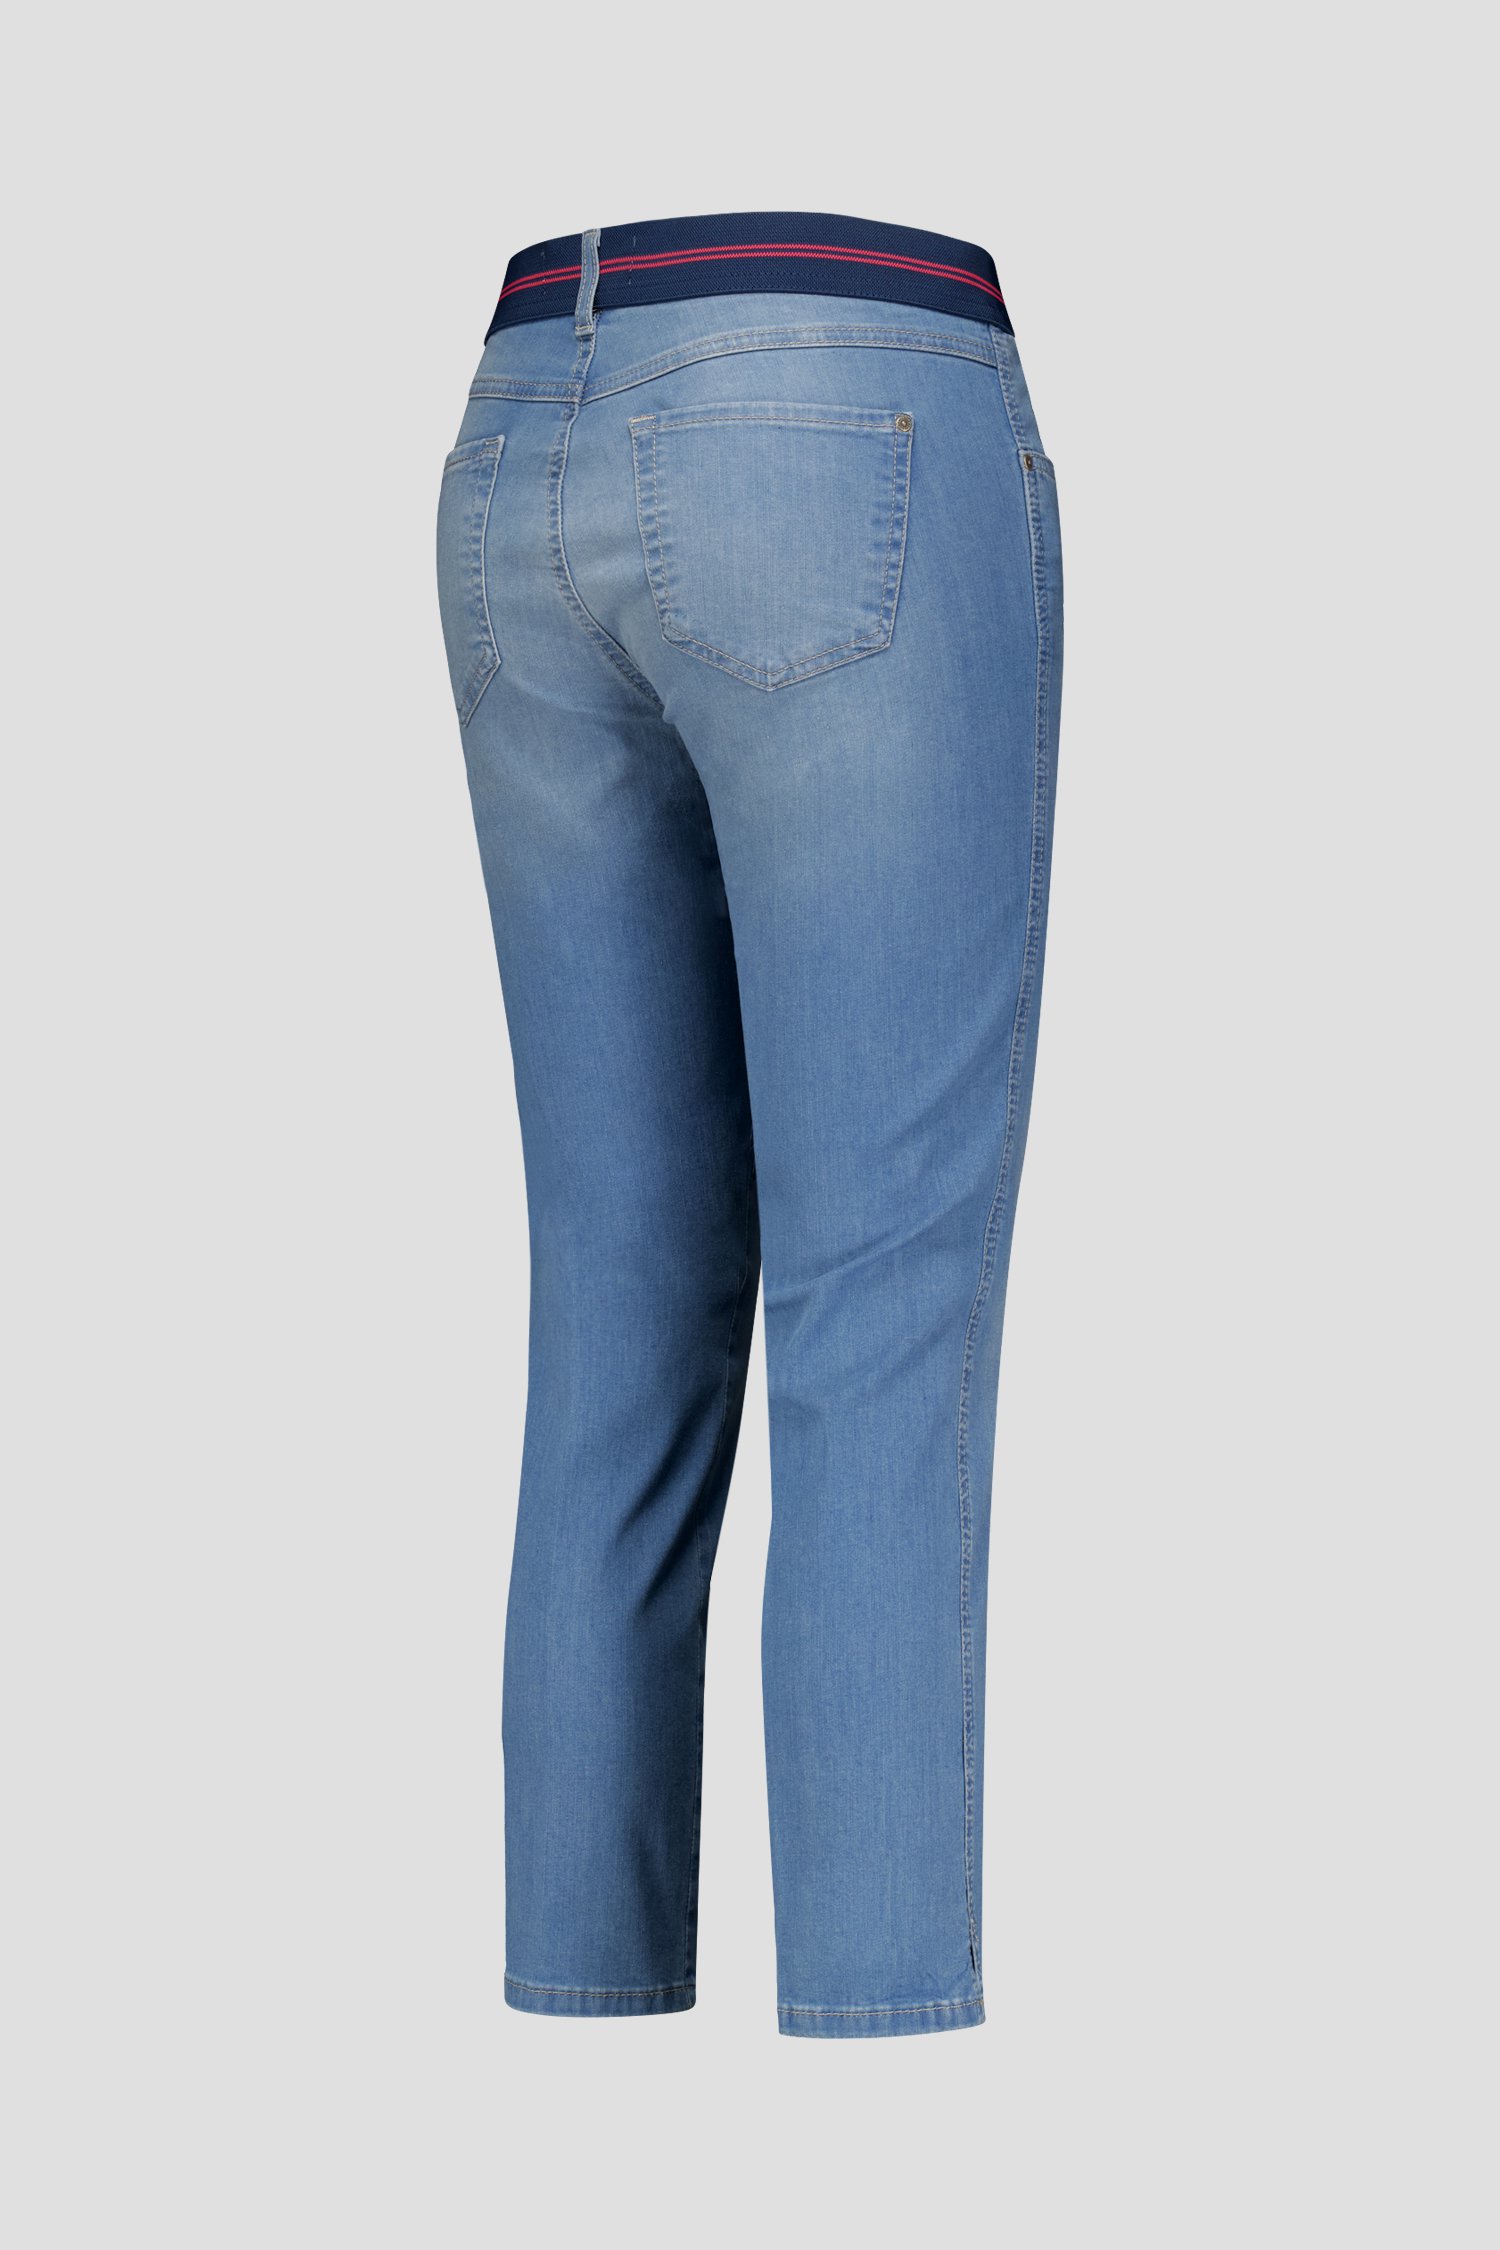 Ecru jeans met elastische taille - 7/8 lengte van Angels voor Dames